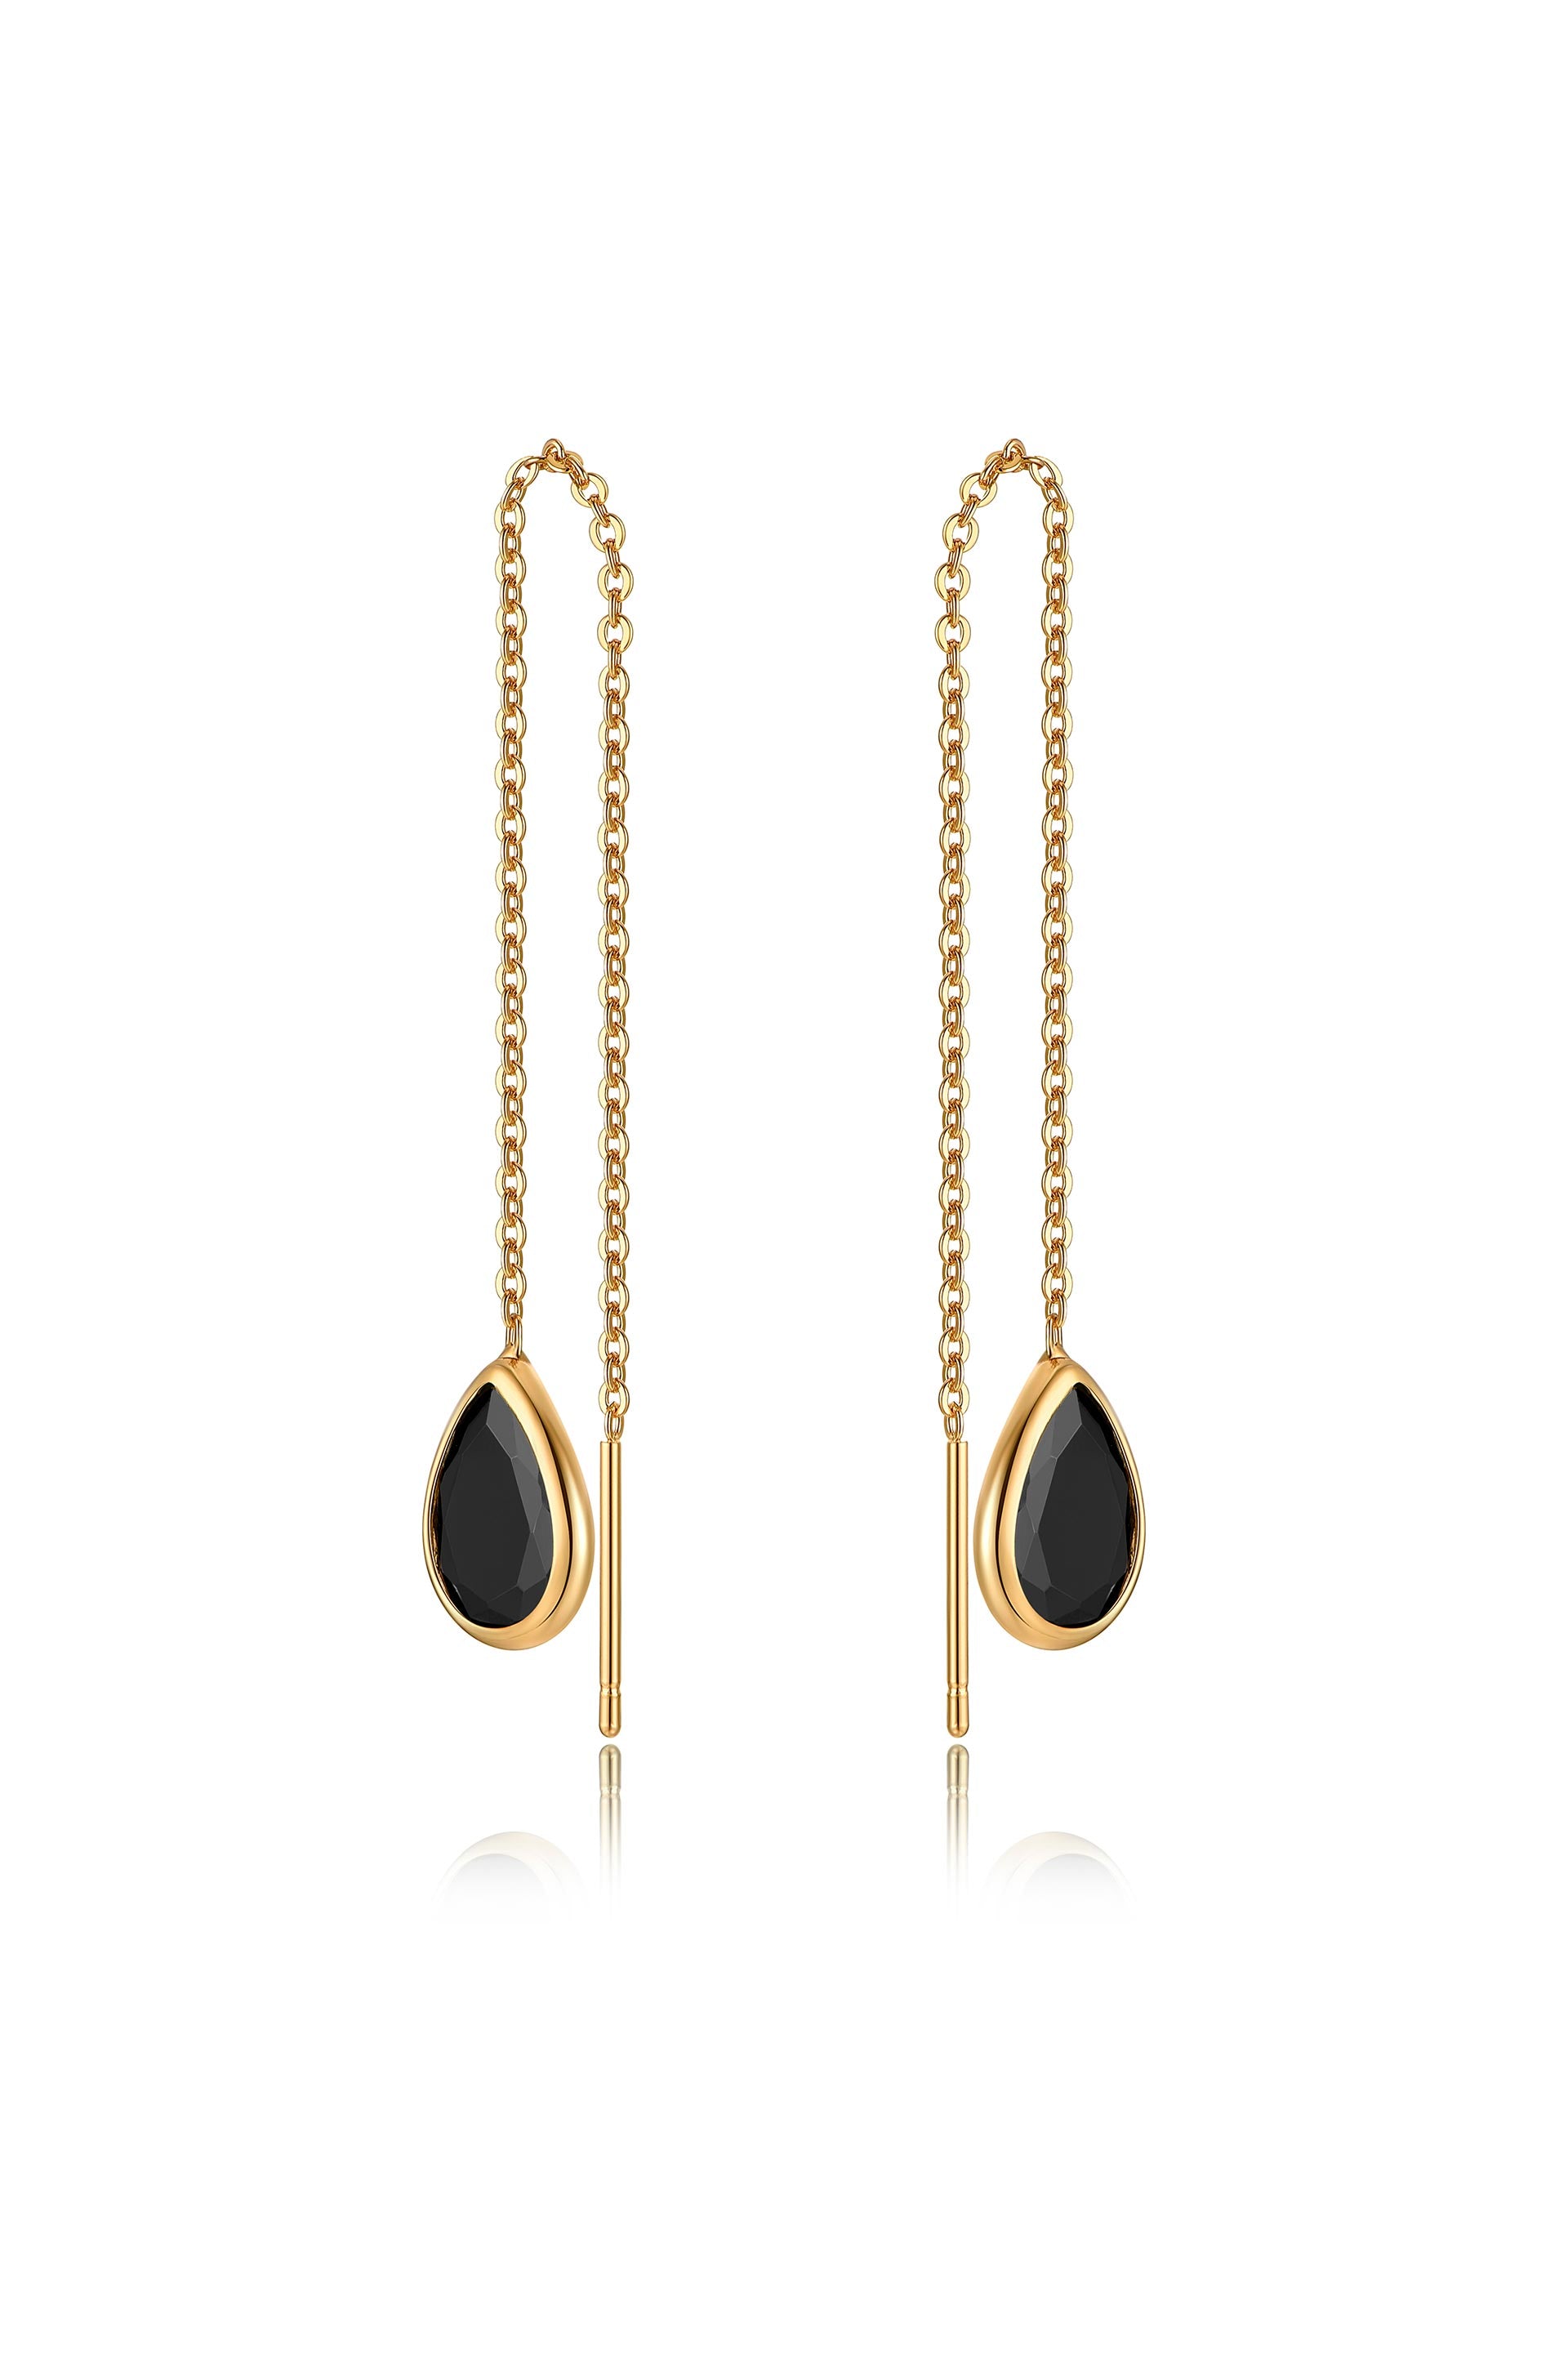 Rhinestone Drop Earrings - Gold Earrings - Chain Dangle Earrings - Lulus